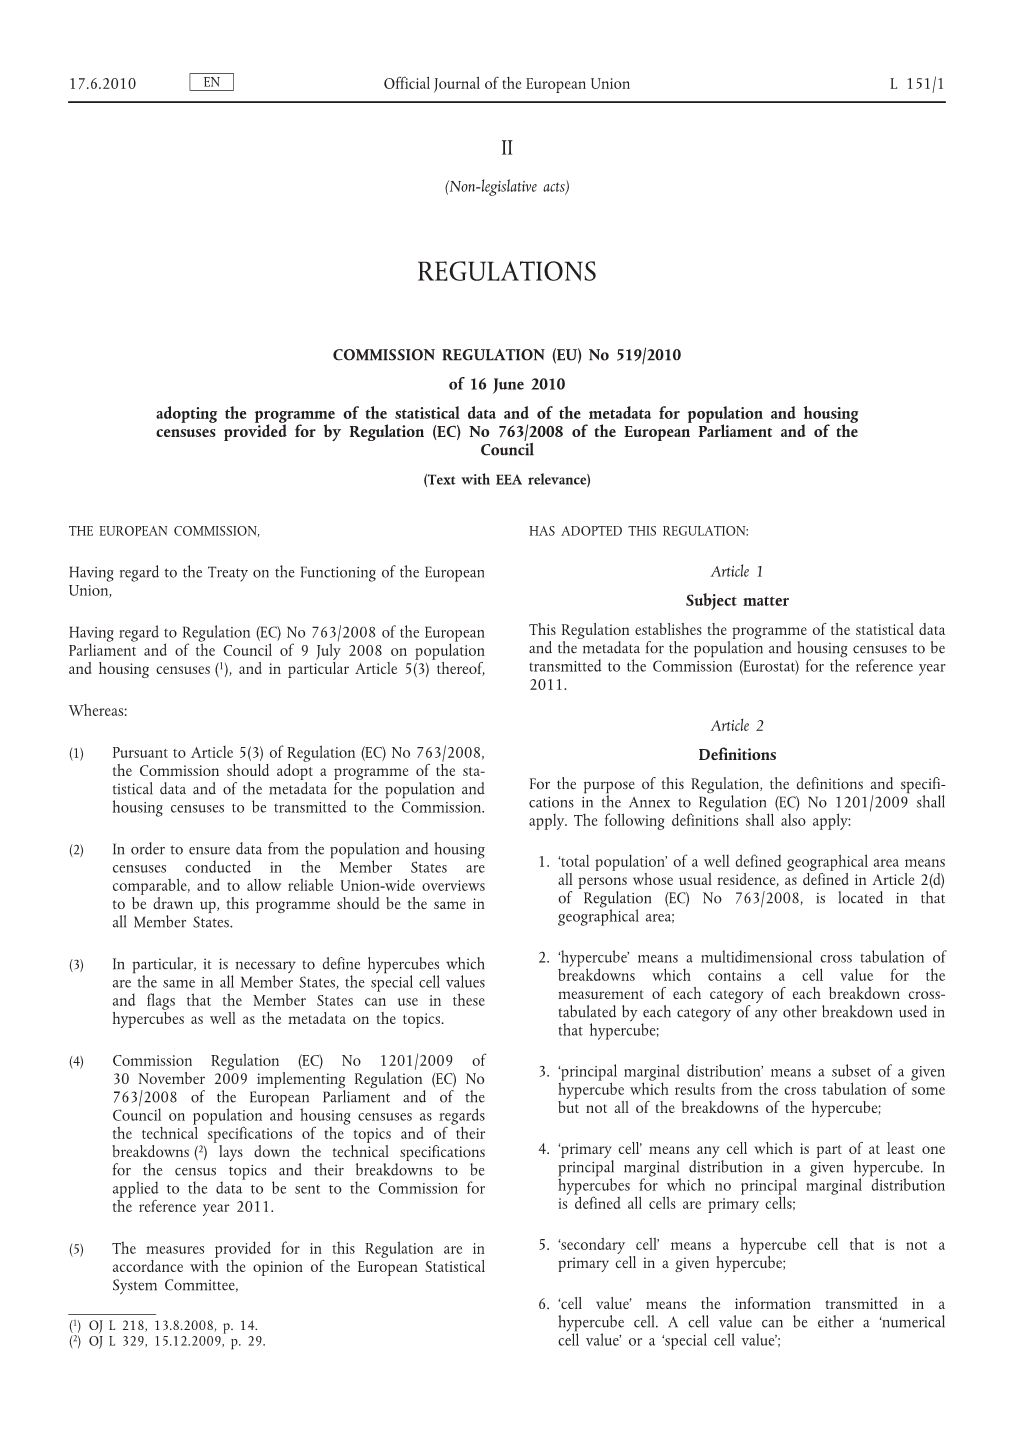 Commission Regulation (EU)